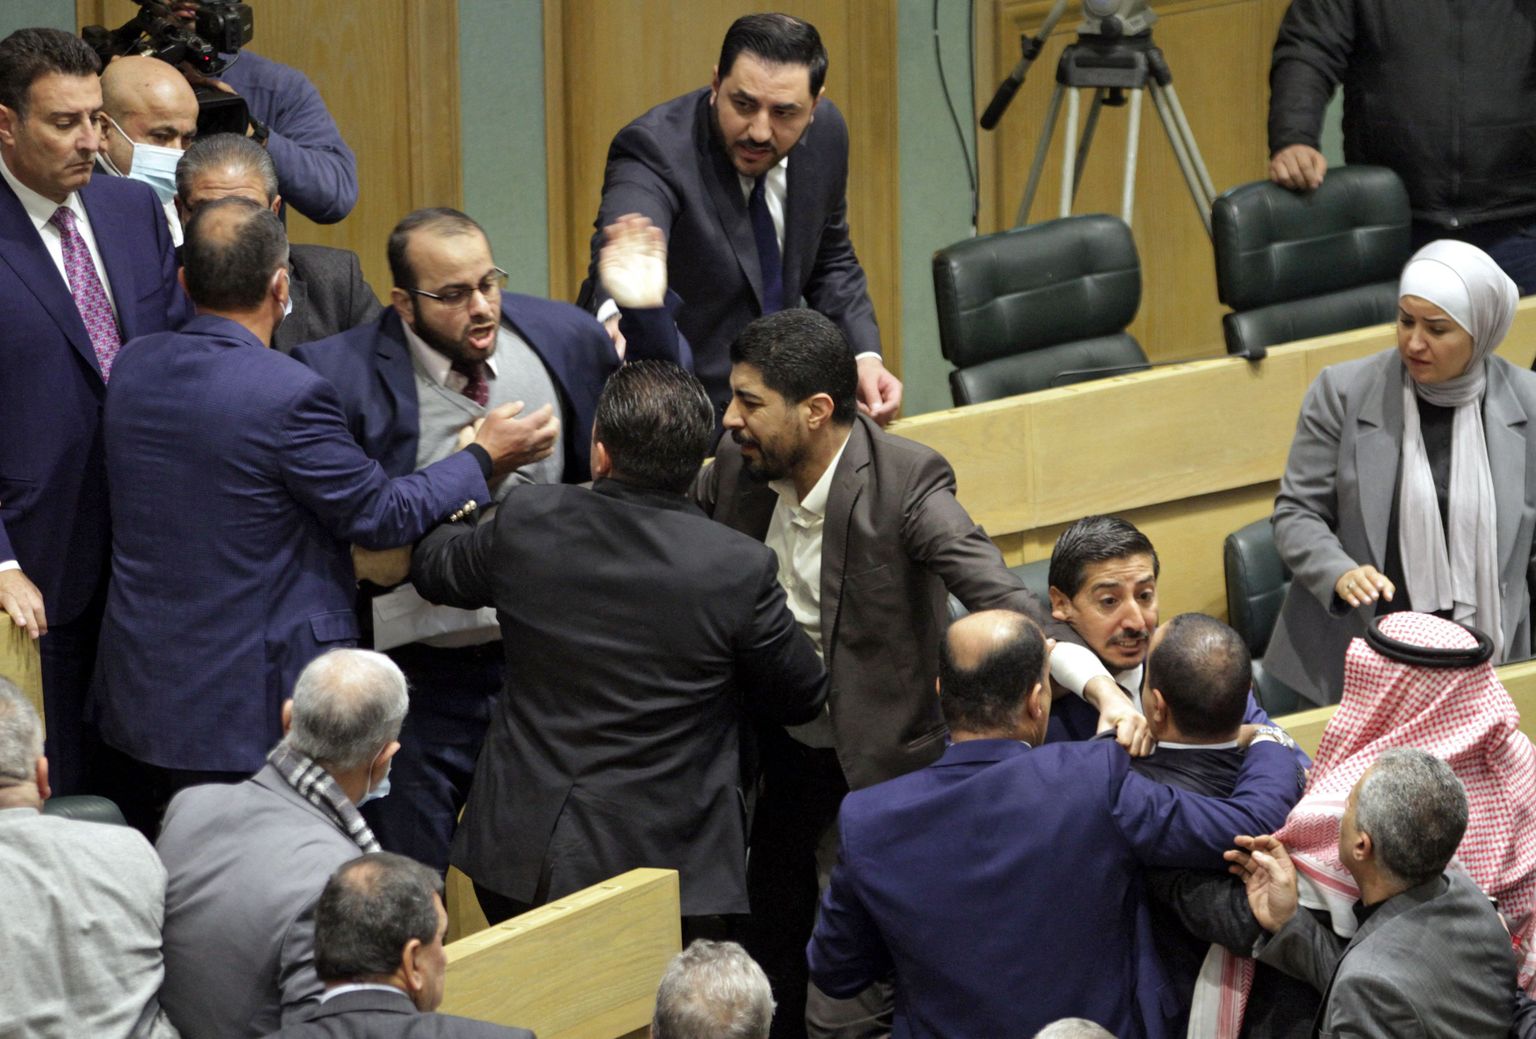 Põhiseaduse muudatuste arutamine ajas Jordaania parlamendisaadikud eile sedavõrd vihale, et käiku lasti ka rusikad.